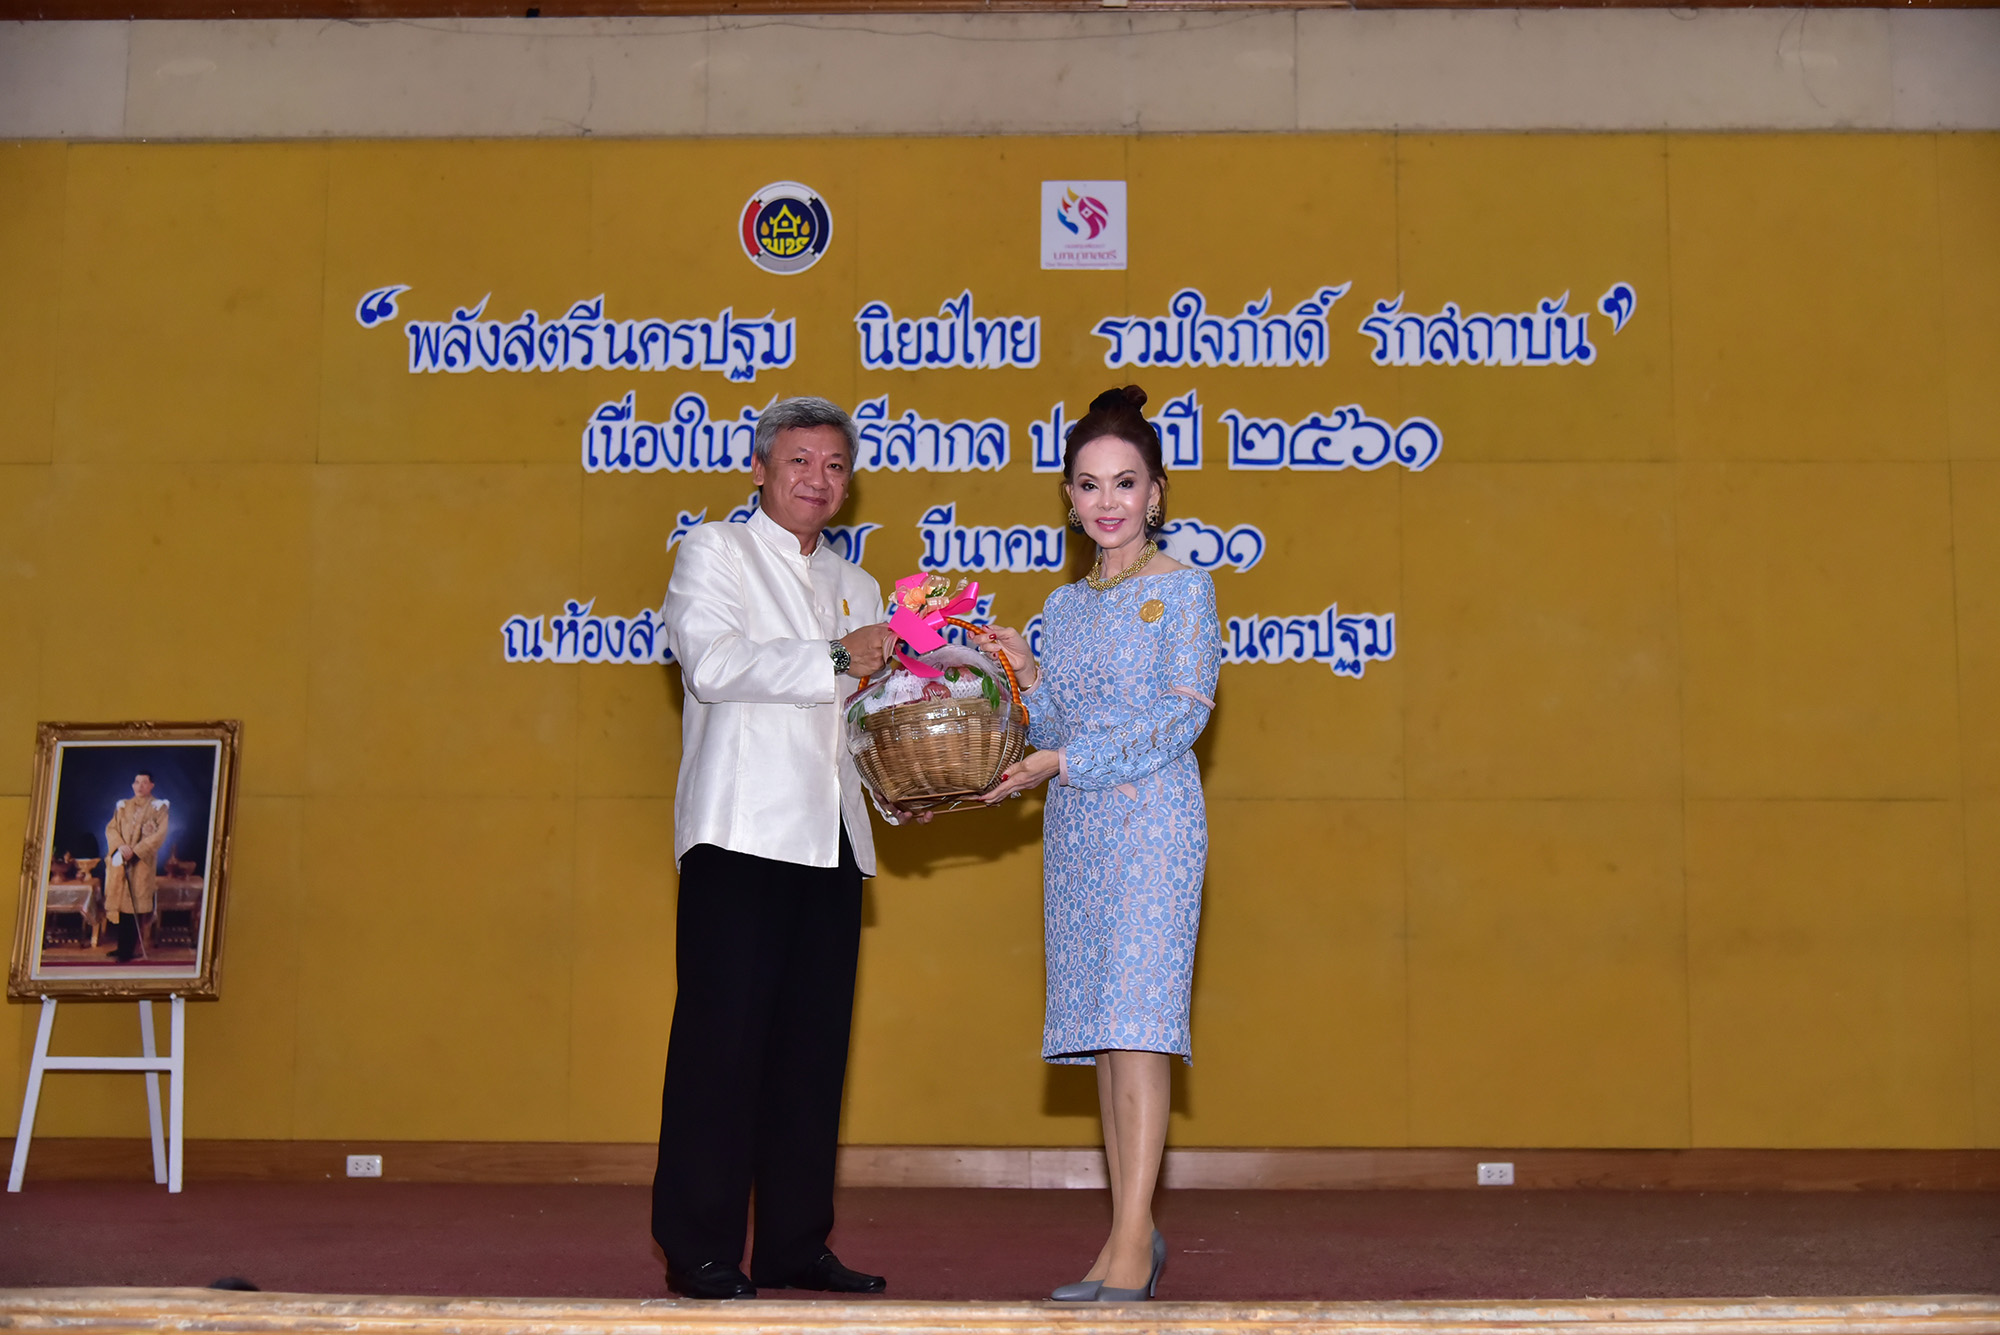 นครปฐม จัดโครงการพลังสตรีนครปฐม นิยมไทย รวมใจภักดิ์ รักสถาบัน เนื่องในวันสตรีสากล 2561